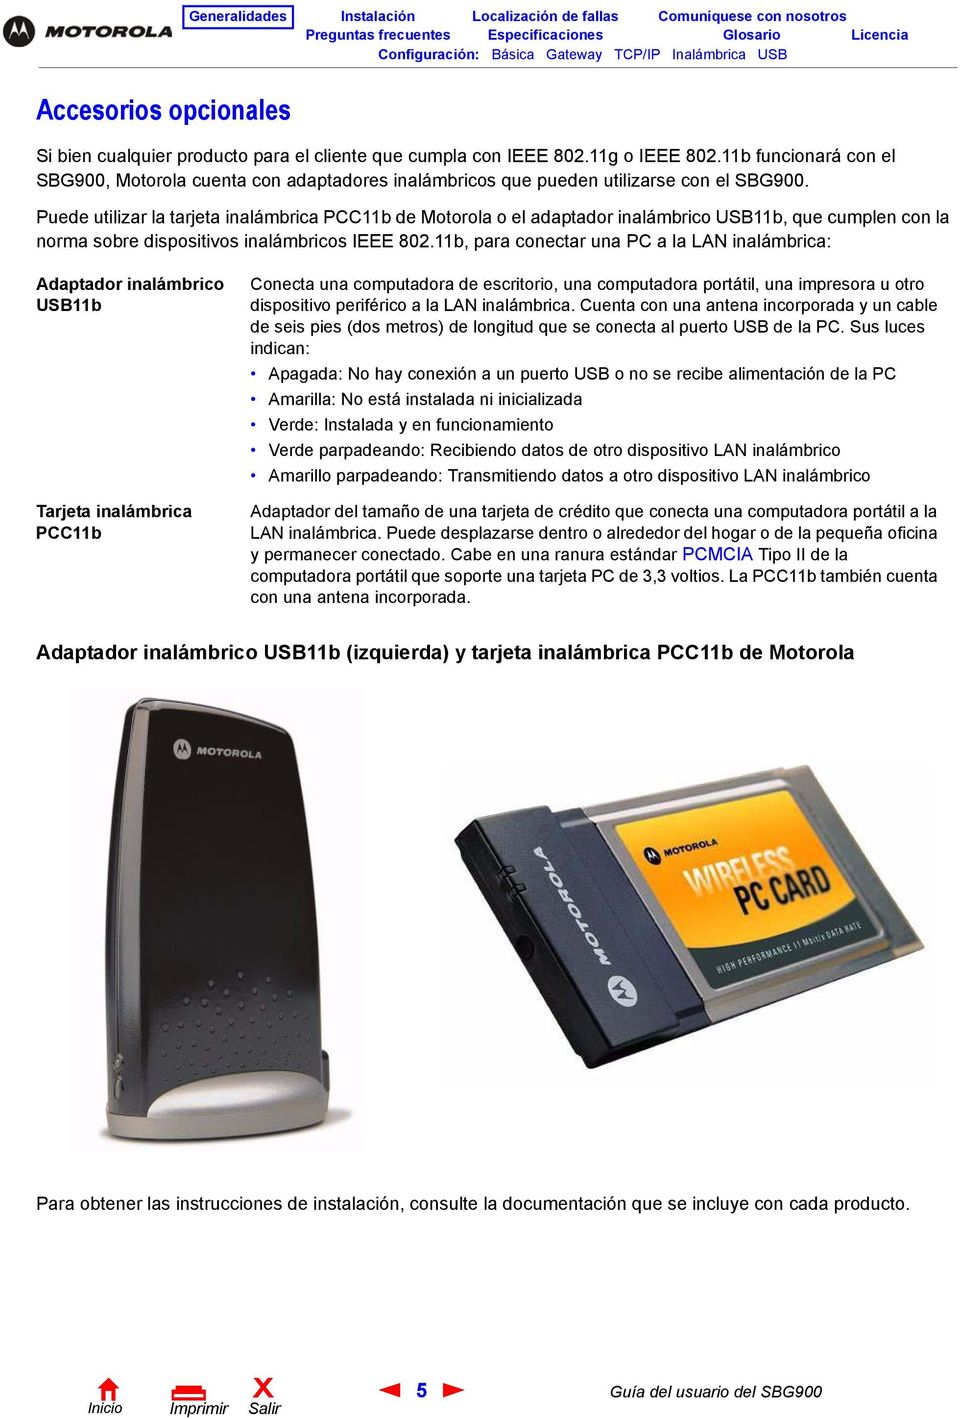 Puede utilizar la tarjeta inalámbrica PCC11b de Motorola o el adaptador inalámbrico USB11b, que cumplen con la norma sobre dispositivos inalámbricos IEEE 802.